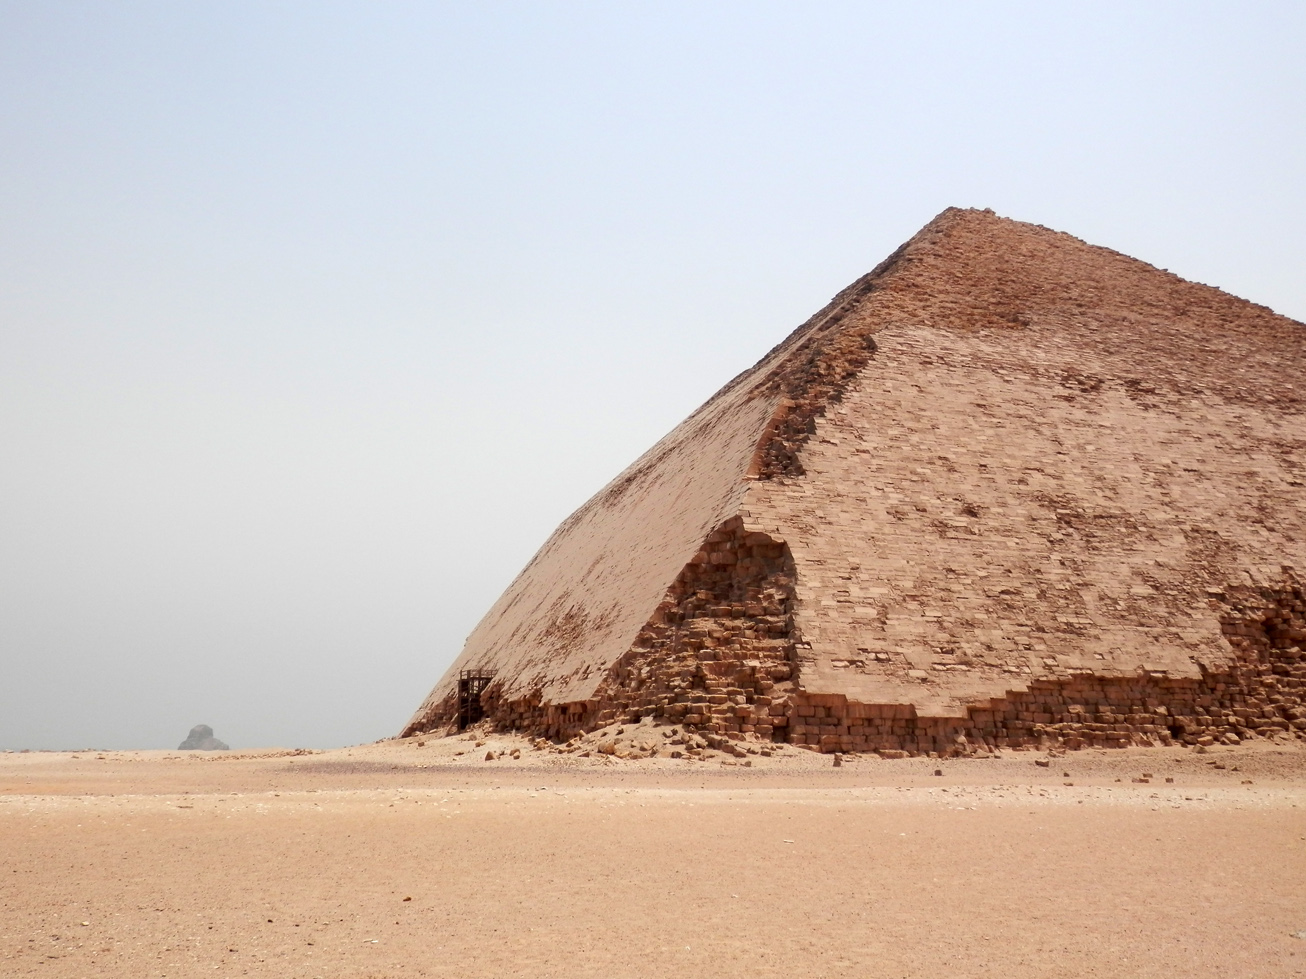 Au fond, on aperçoit la pyramide noire, aussi surnommée la "fausse pyramide". Mais je ne l'ai pas vue de près, alors je vous laisse la googler.